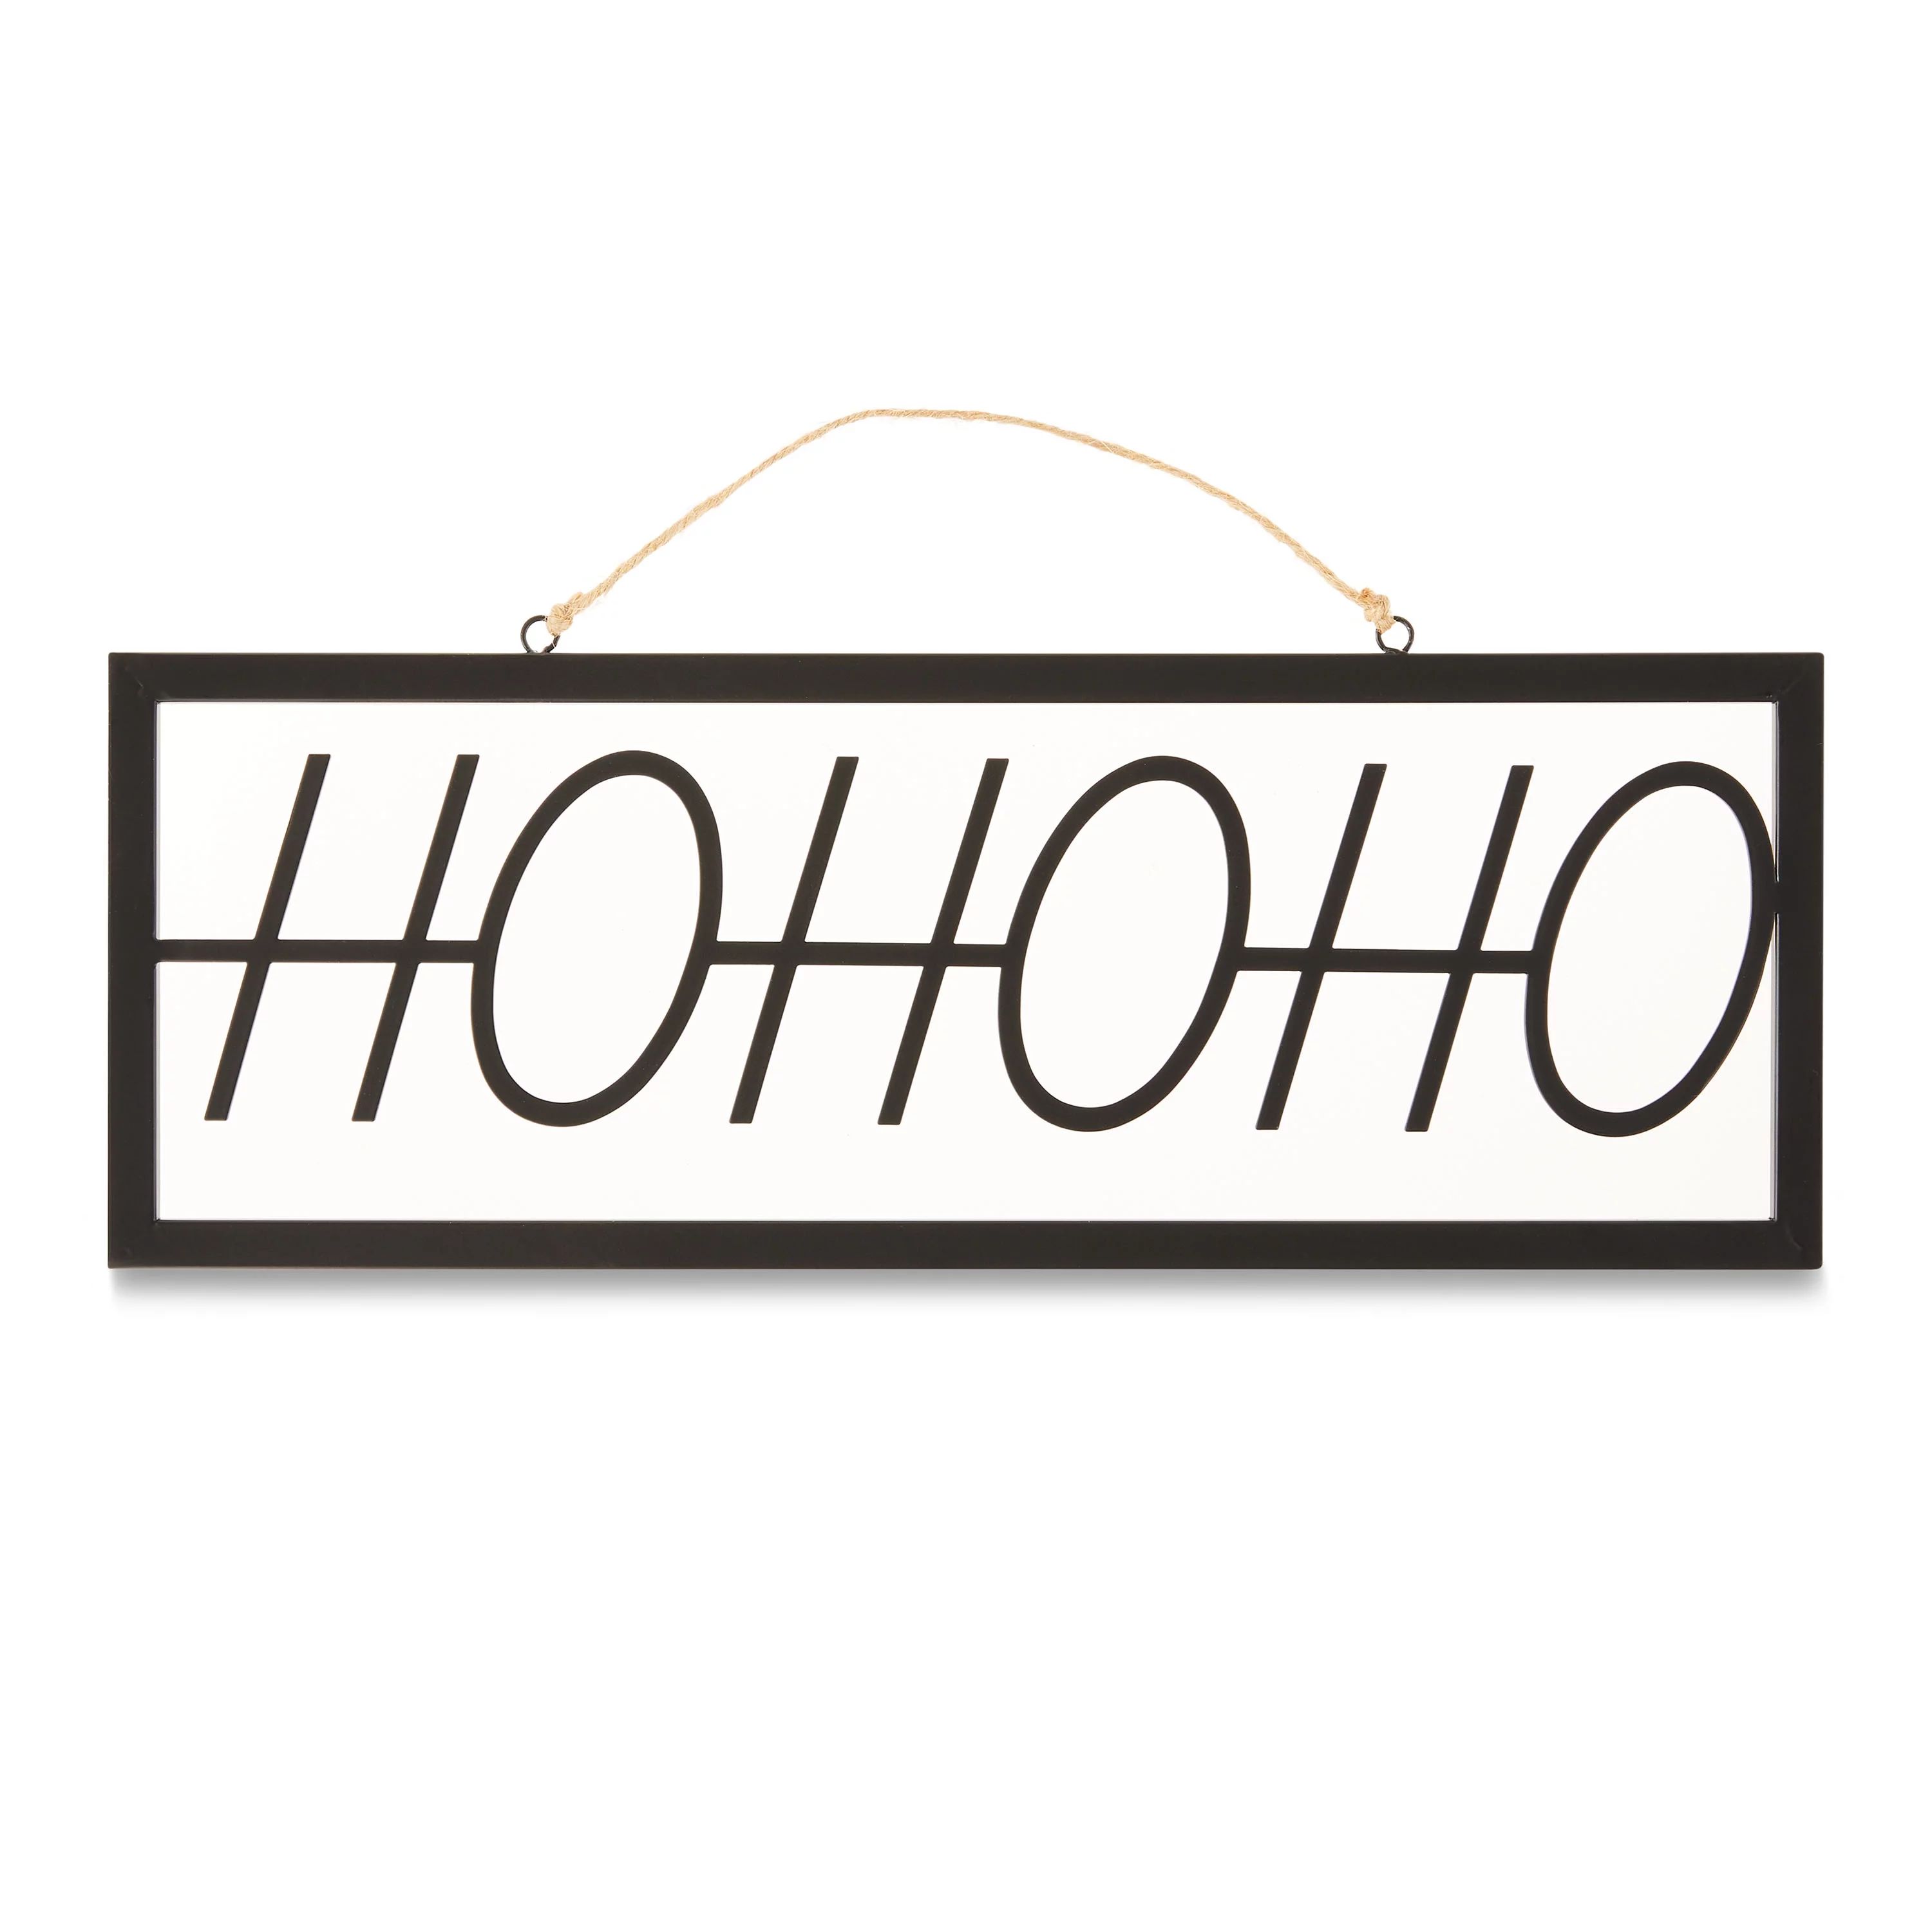 16" x 5.75" Metal HoHoHo Sign Modern Christmas Decoration, Black, Holiday Time - Walmart.com | Walmart (US)